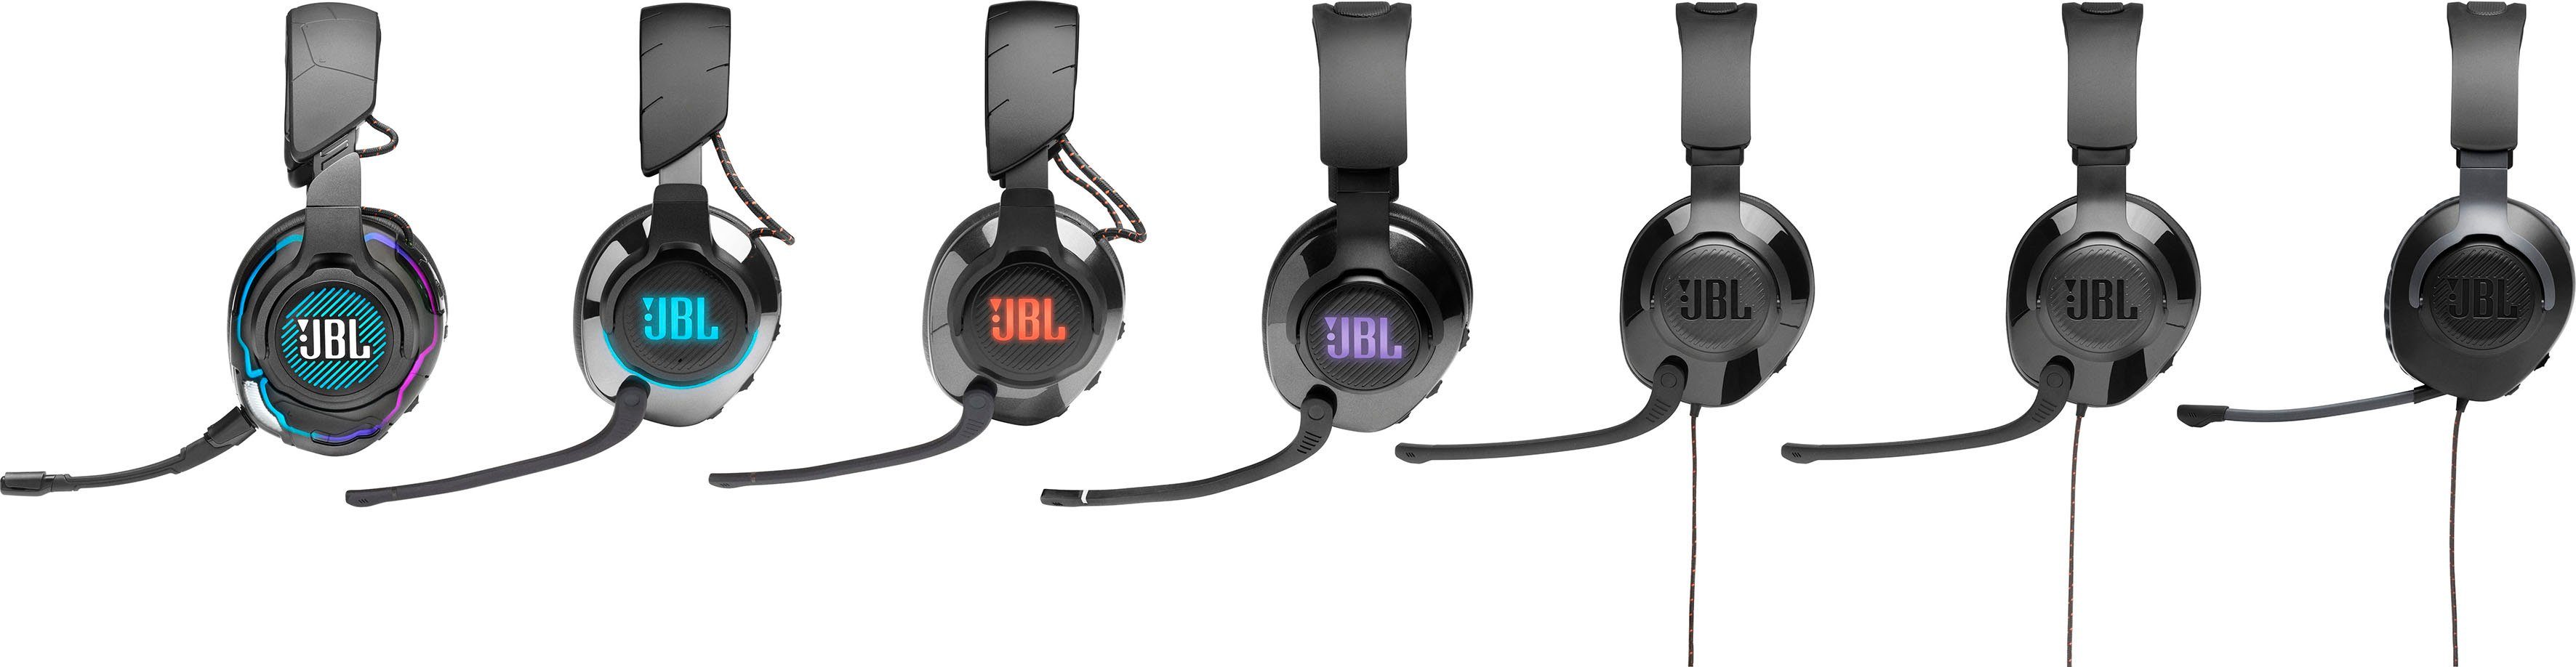 400 QUANTUM JBL Gaming-Headset